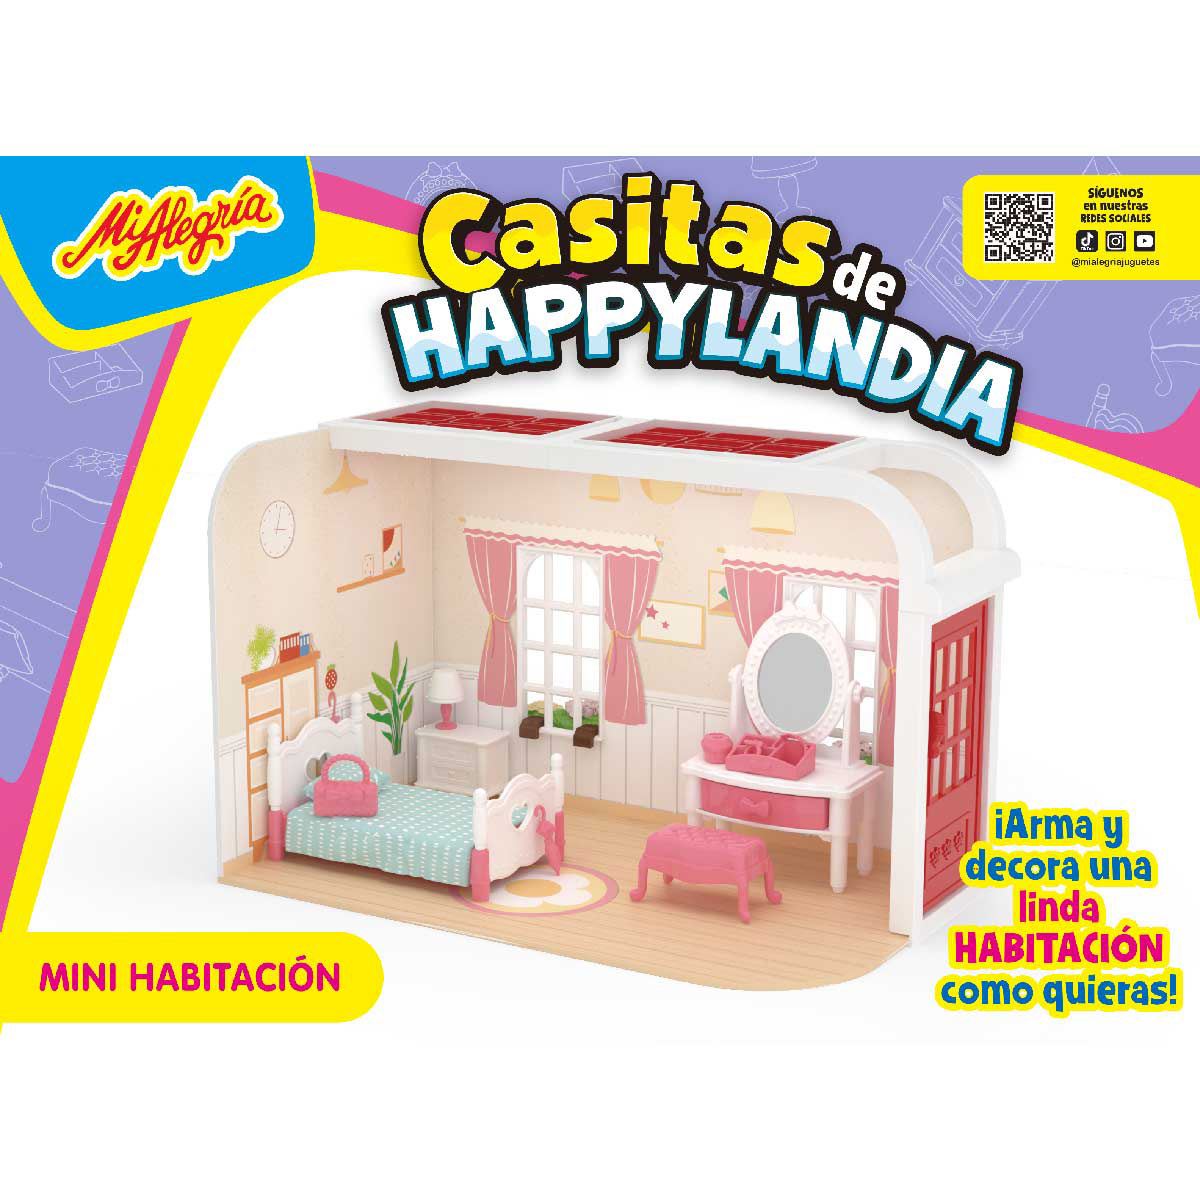 Mini taburete de plástico para casa de muñecas: taburete alto en miniatura,  juego de juguete, accesorio de decoración para casa de muñecas